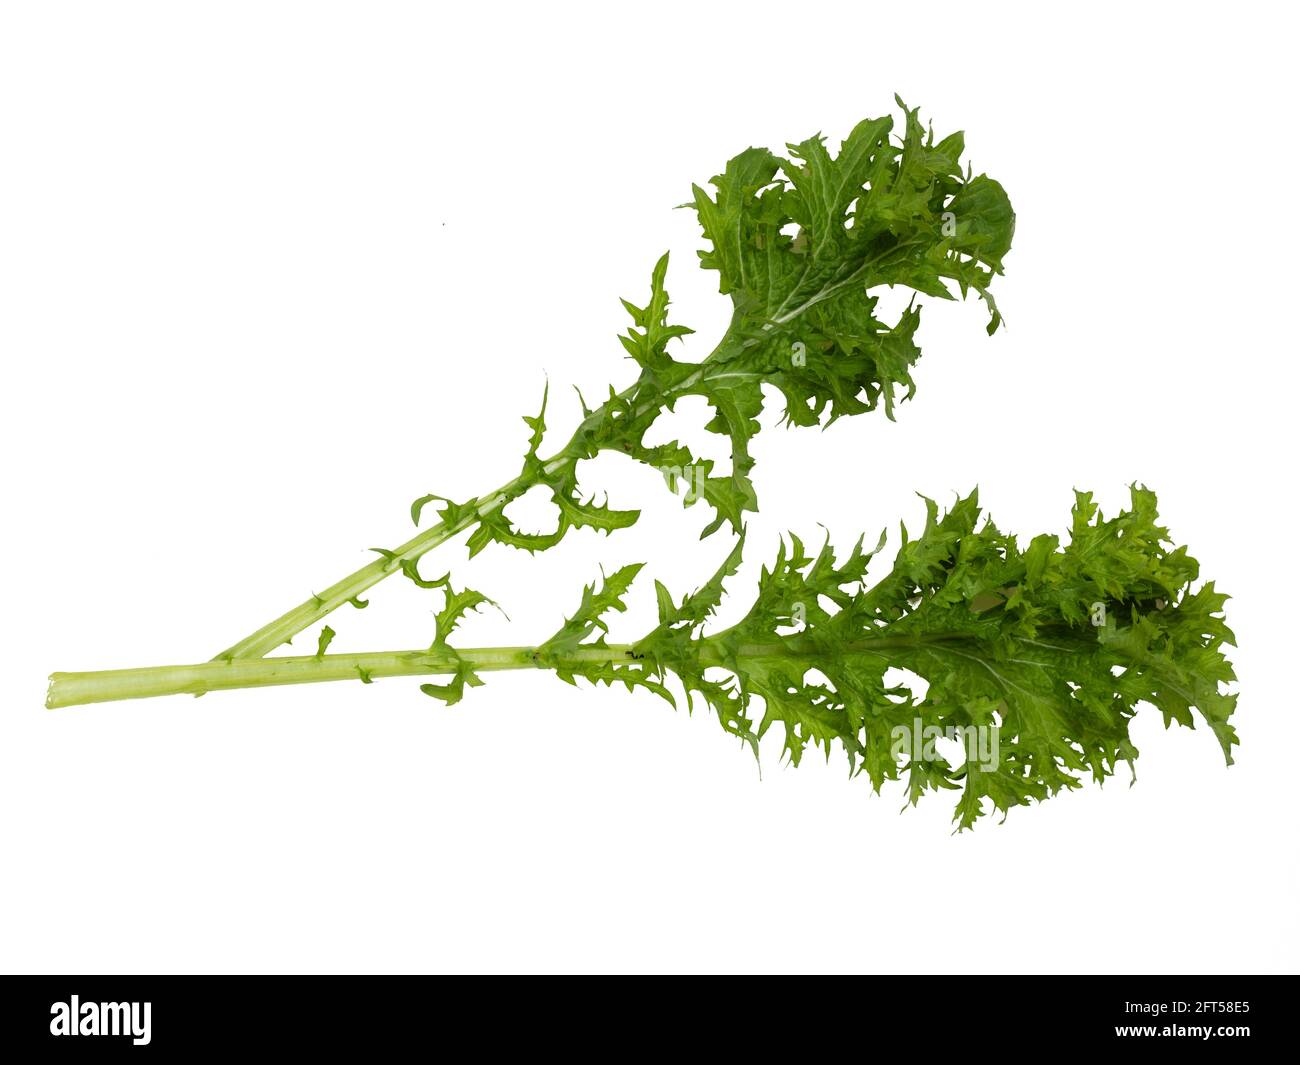 Frisch gepflückte Blätter des biologisch angebauten Salatsenfs Brassica juncea 'Pizzo' auf weißem Hintergrund Stockfoto